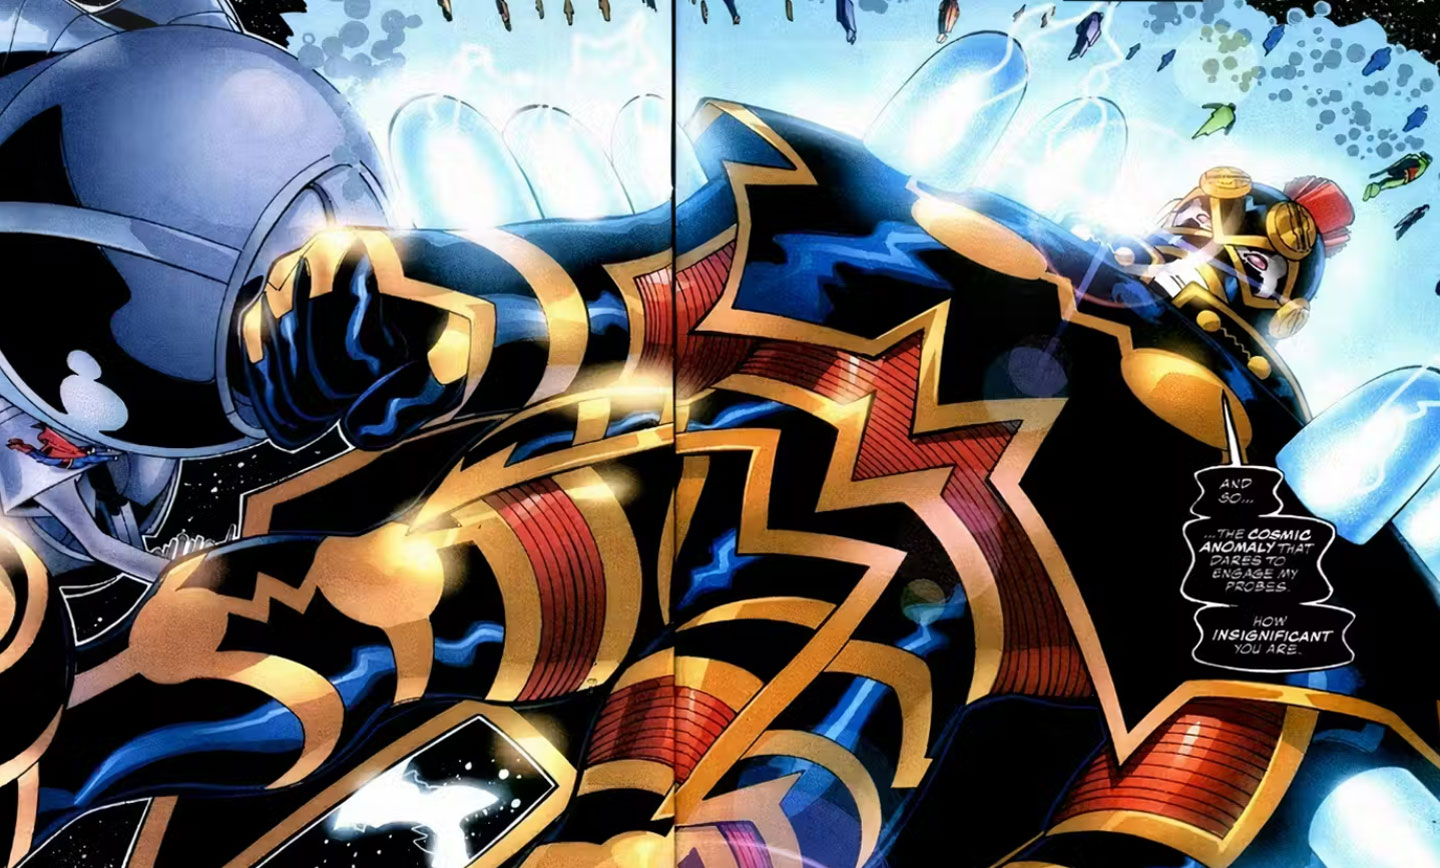 در سال 2000 «امپرایکس» برای اولین بار به عنوان دشمنی برای سوپرمن معرفی شد